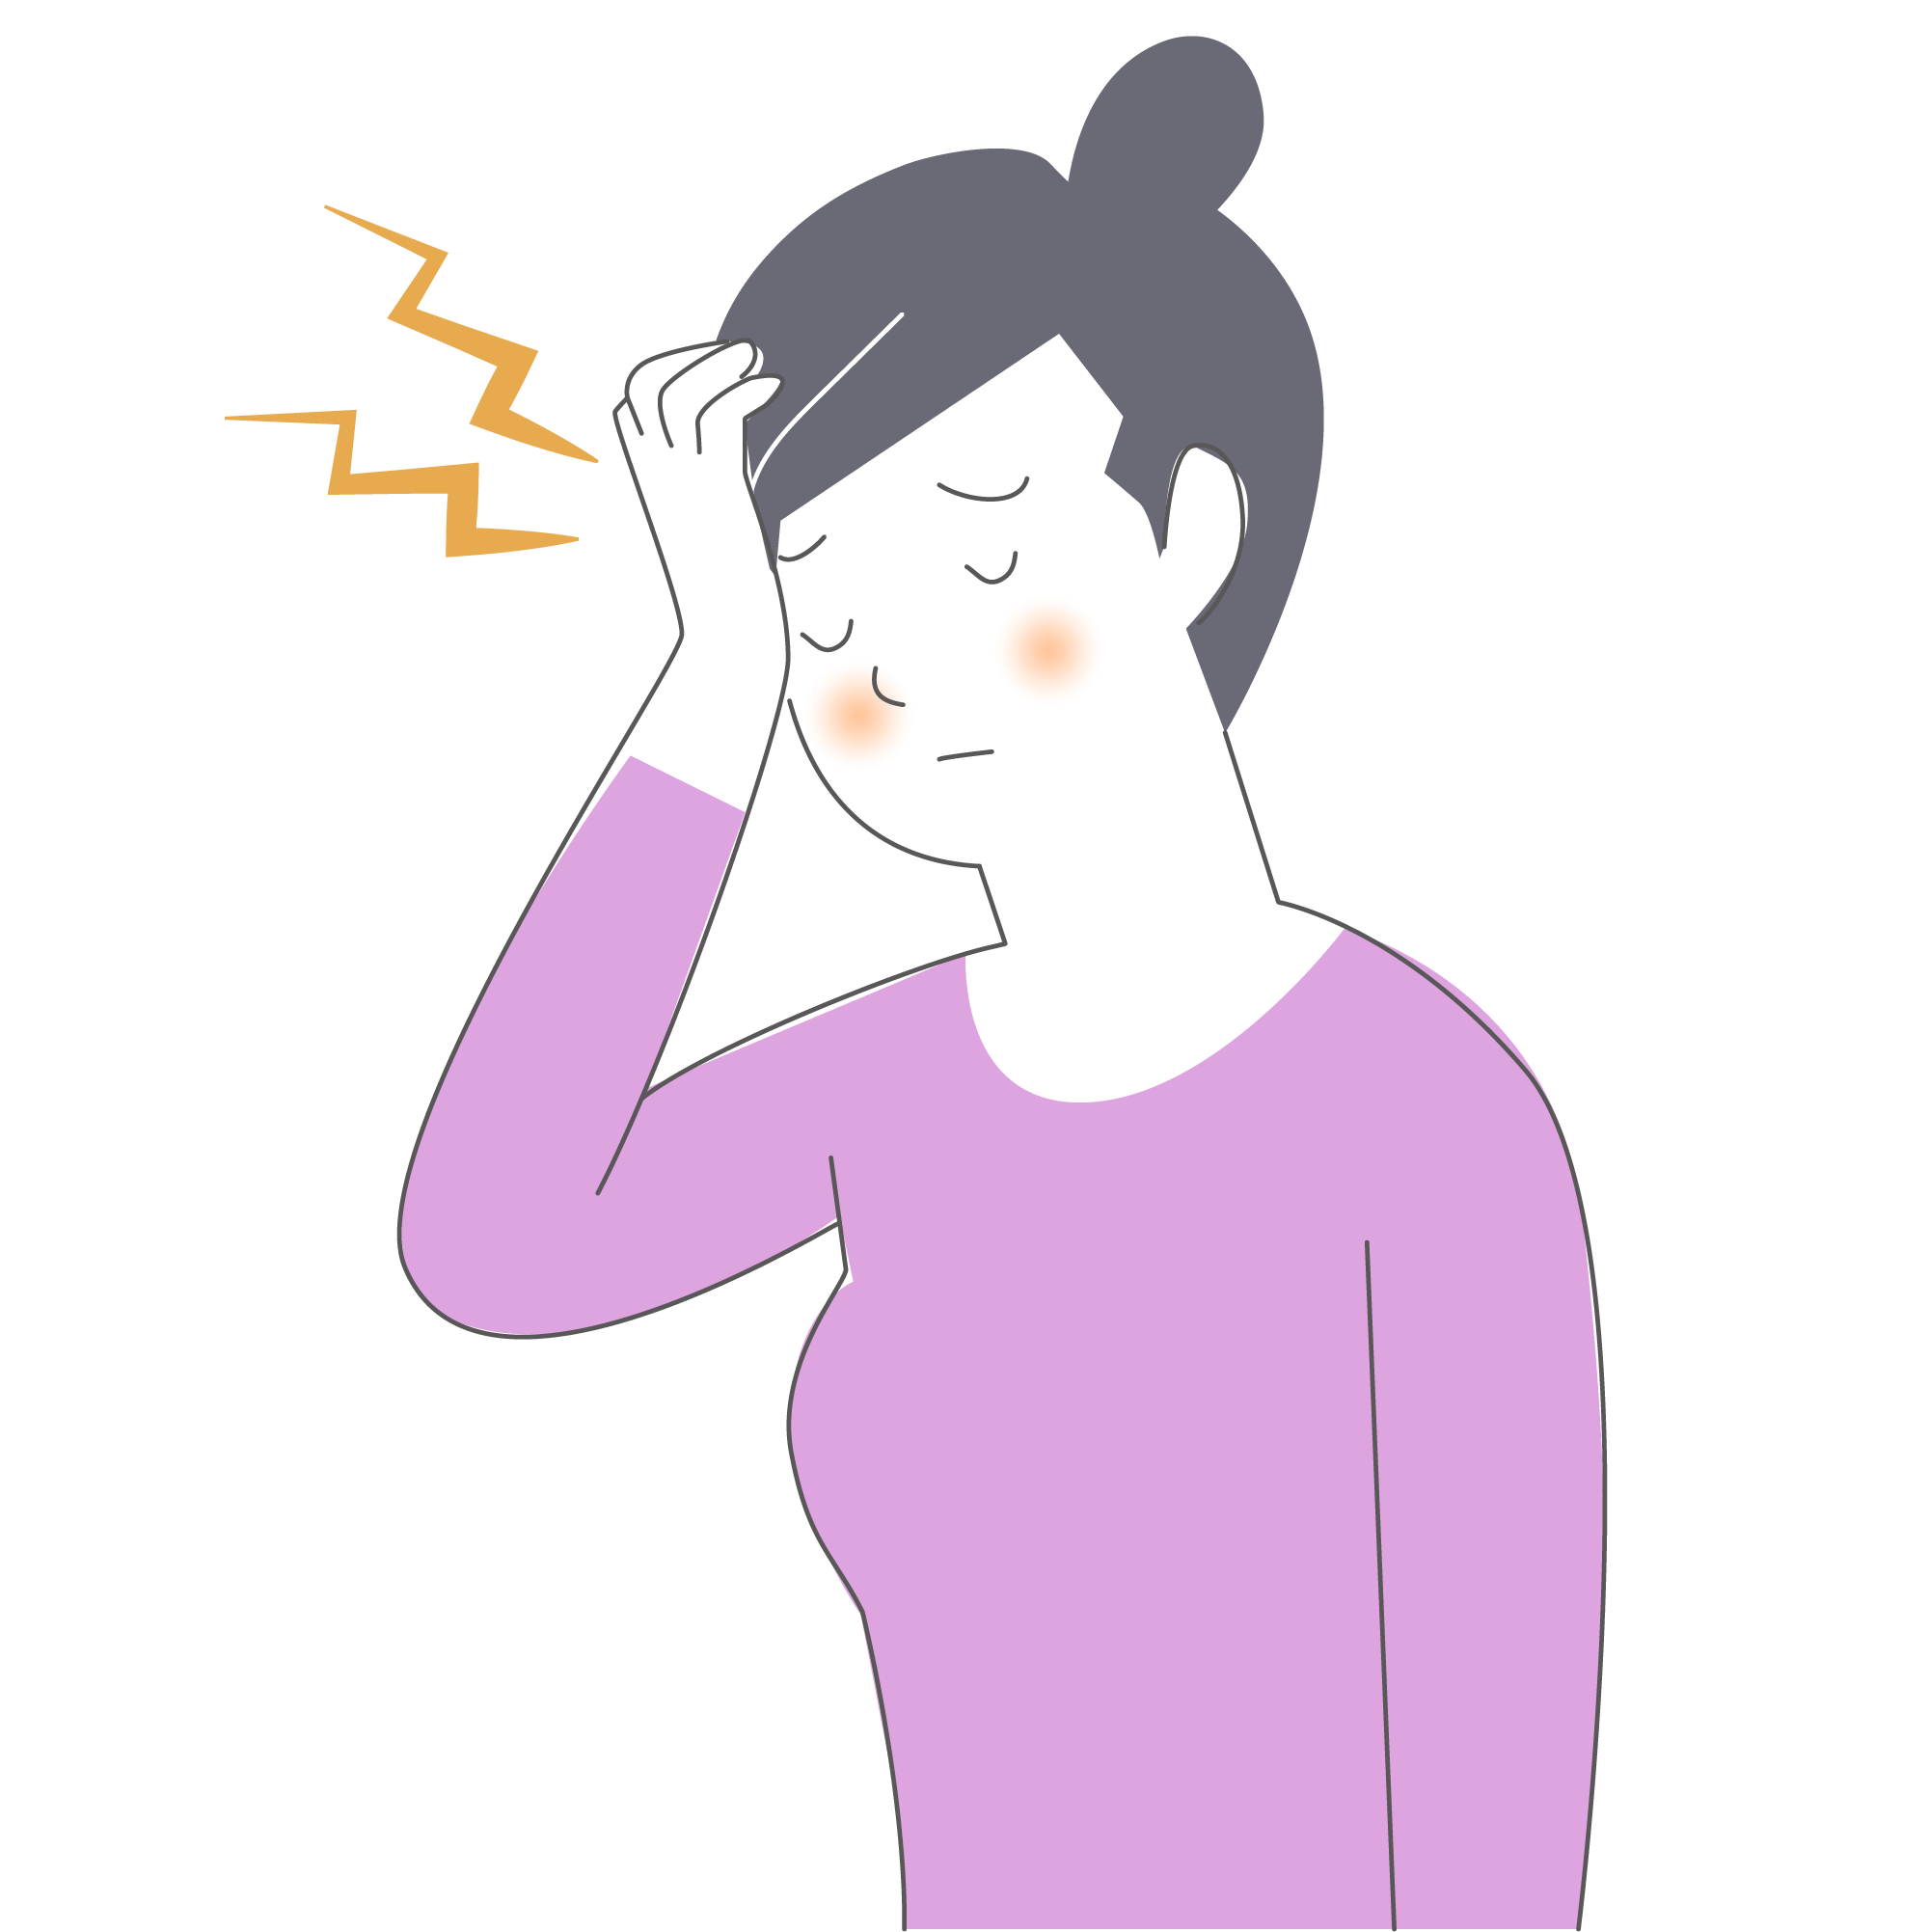 頭痛や原因不明の不調